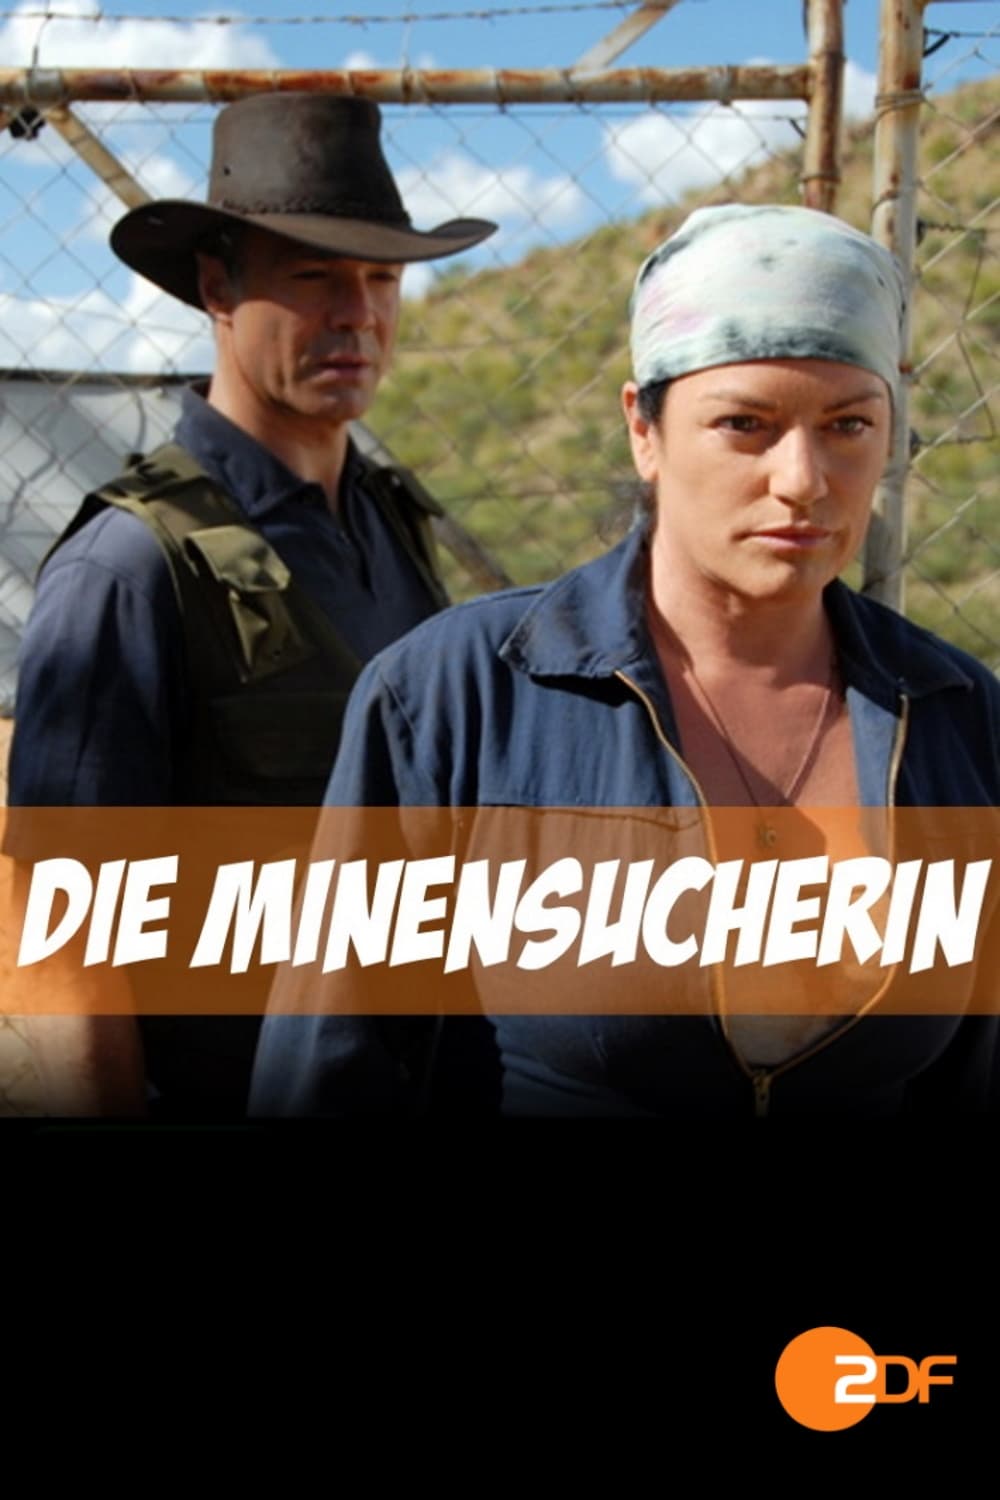 Die Minensucherin (2011)